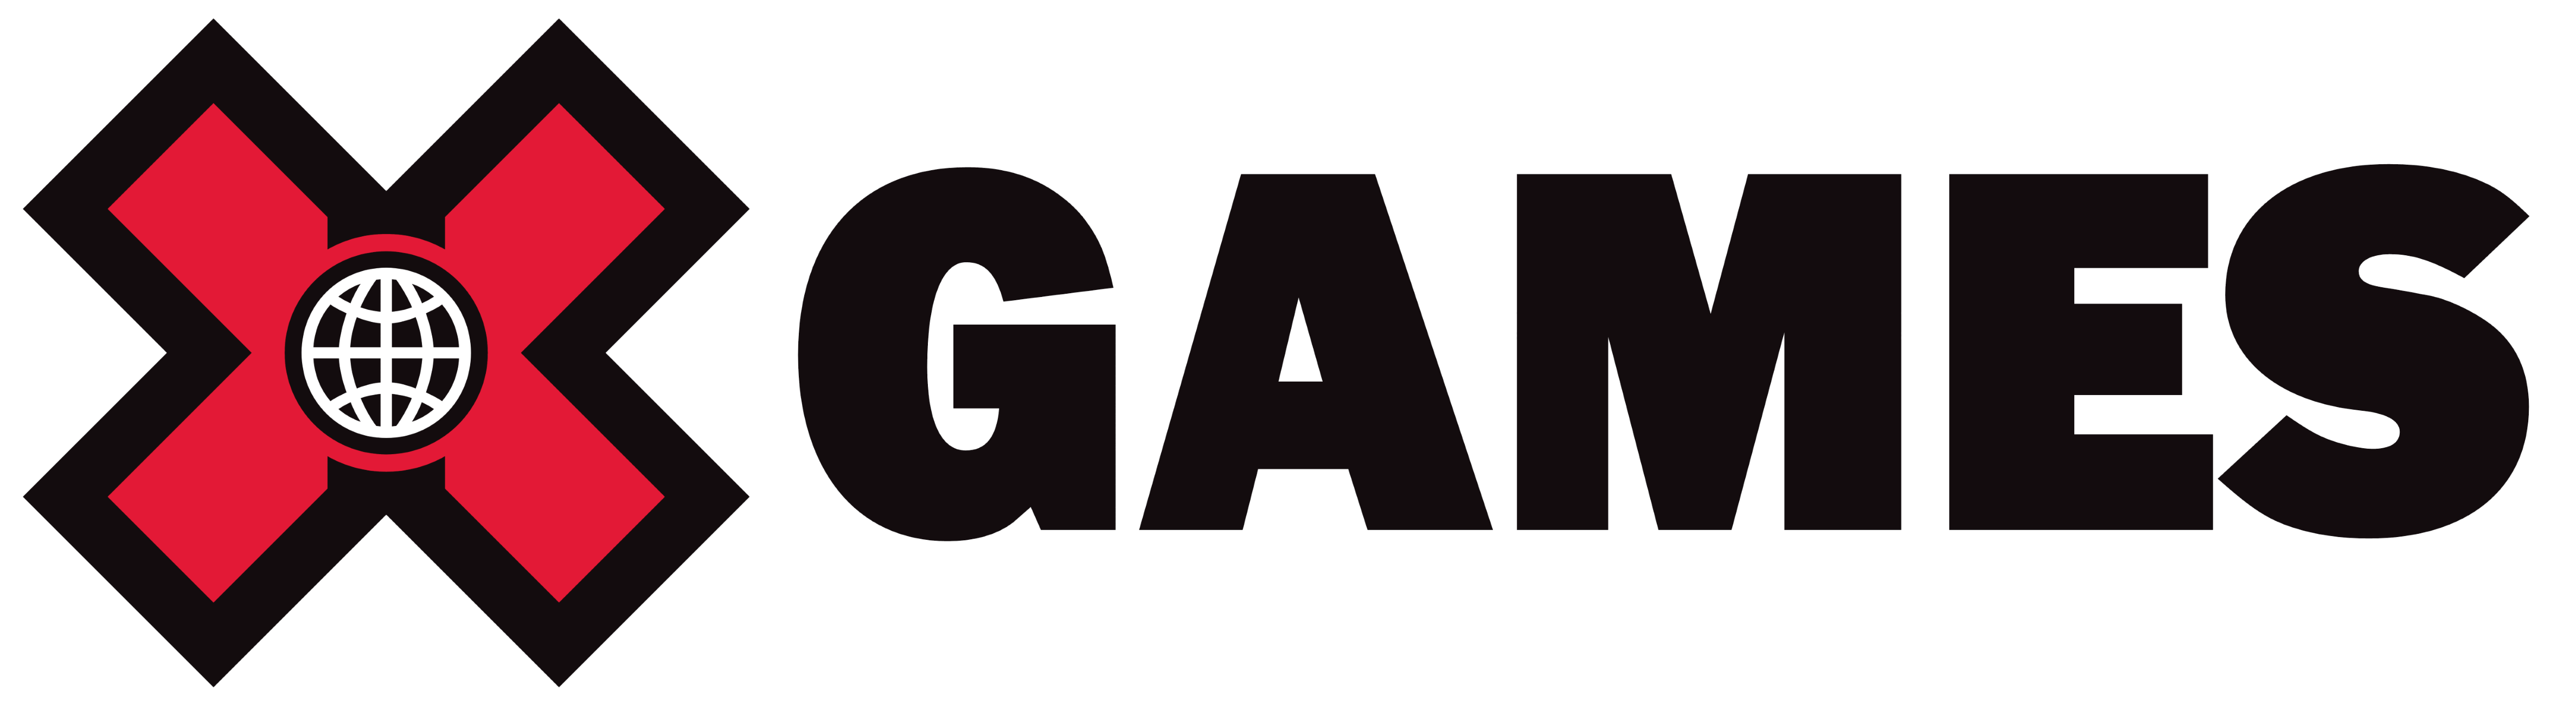 X Games logo, logotype